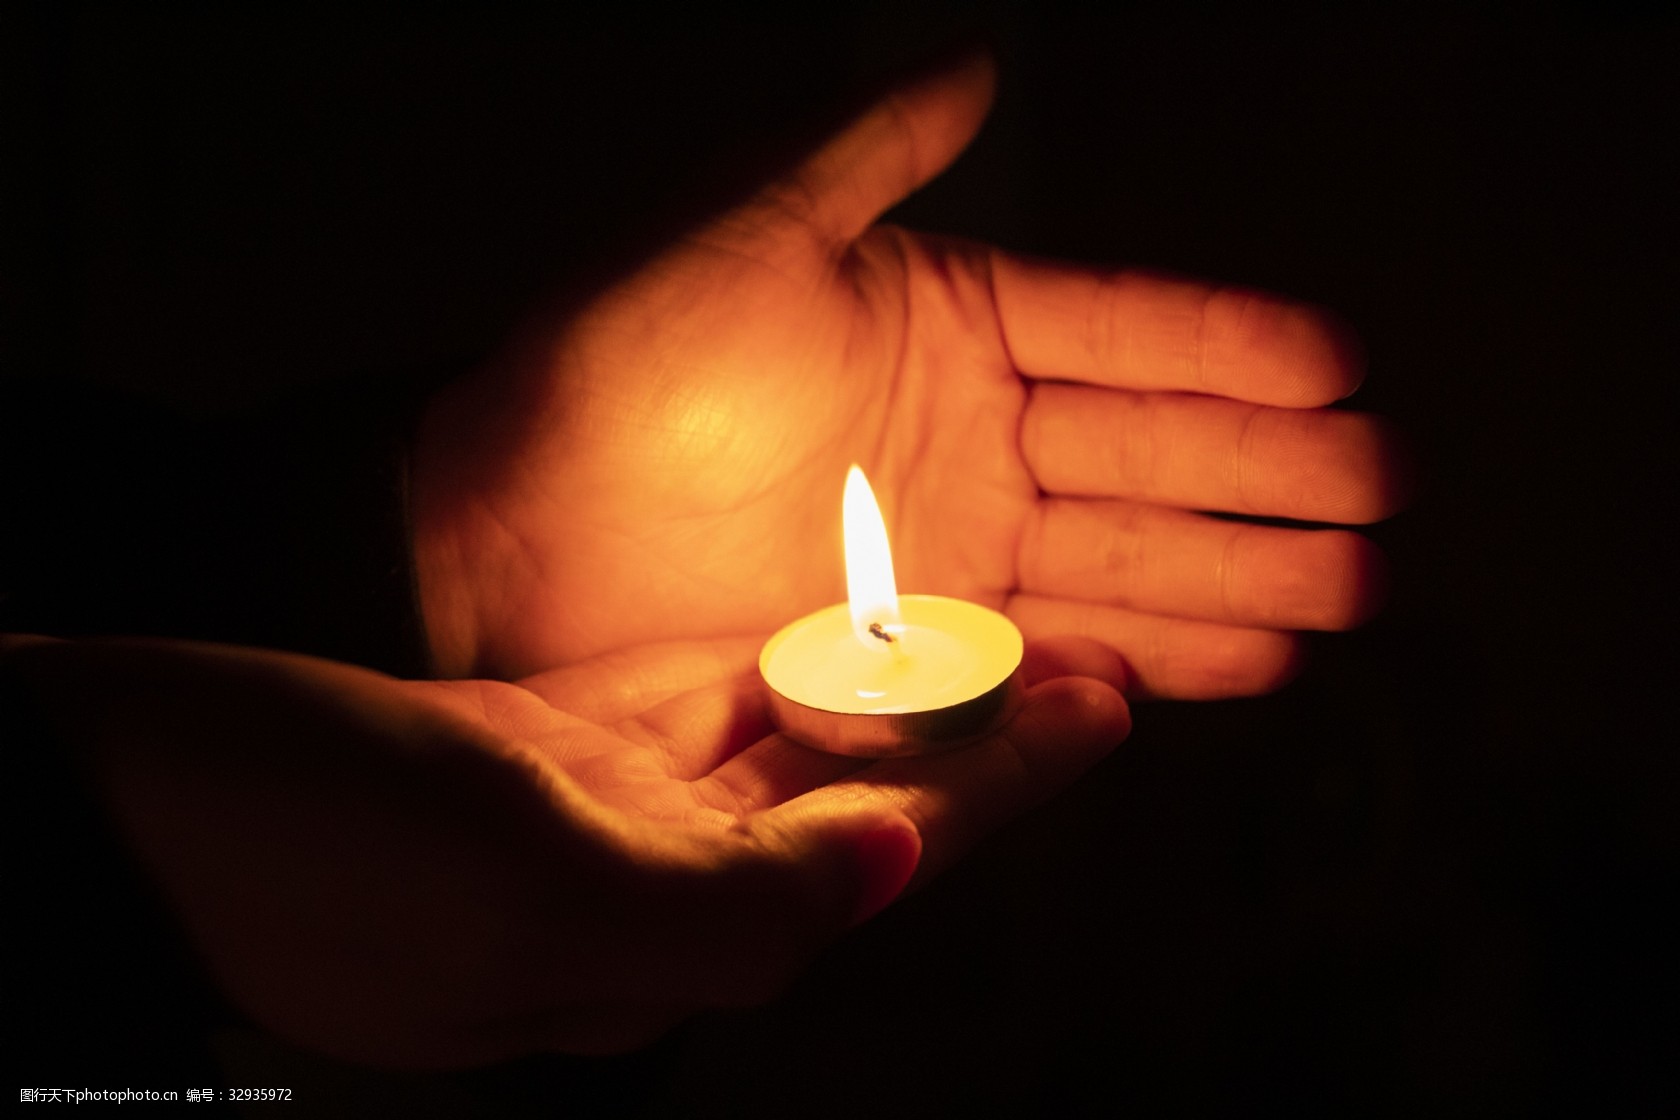 蜡烛 茶蜡烛 祷告 - Pixabay上的免费照片 - Pixabay